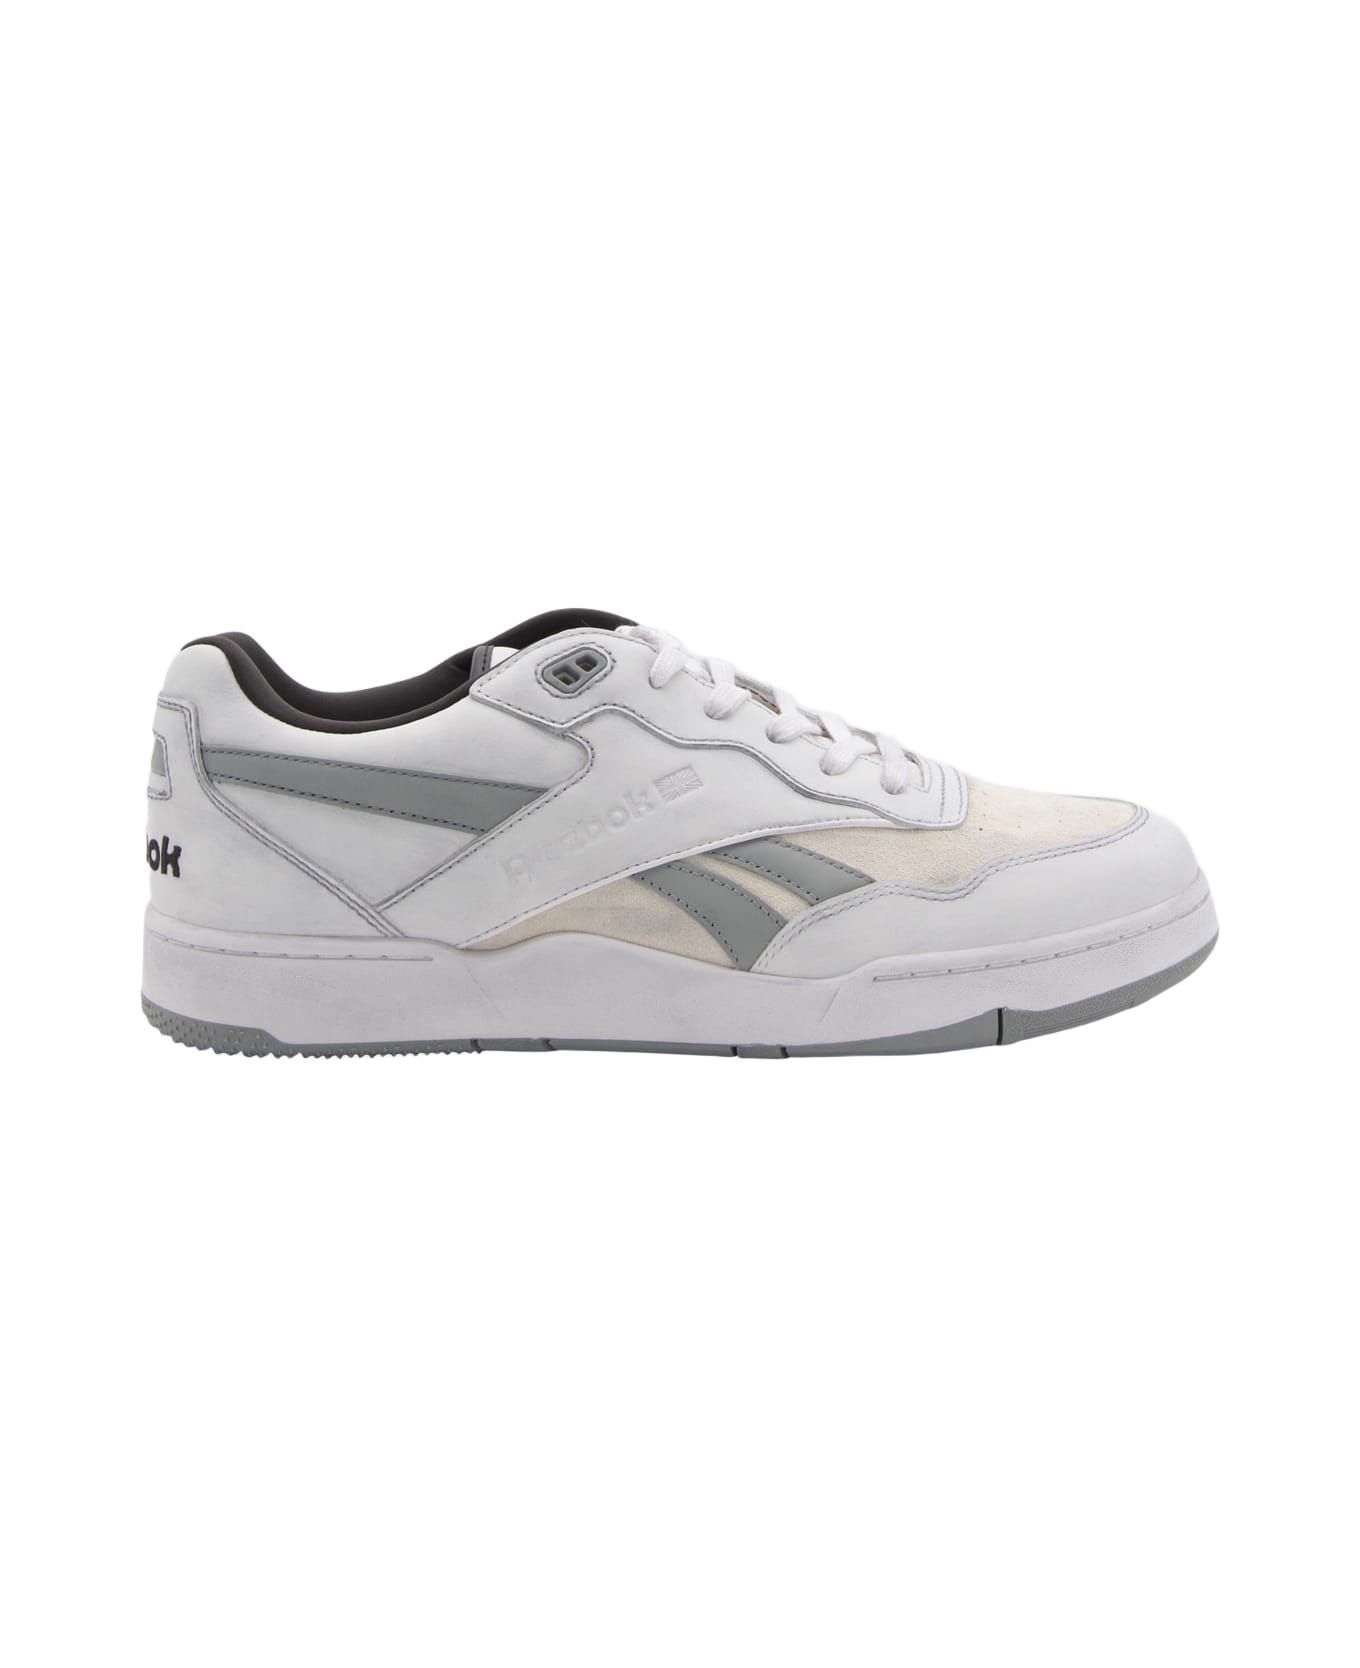 Reebok White Leather Sneakers - White